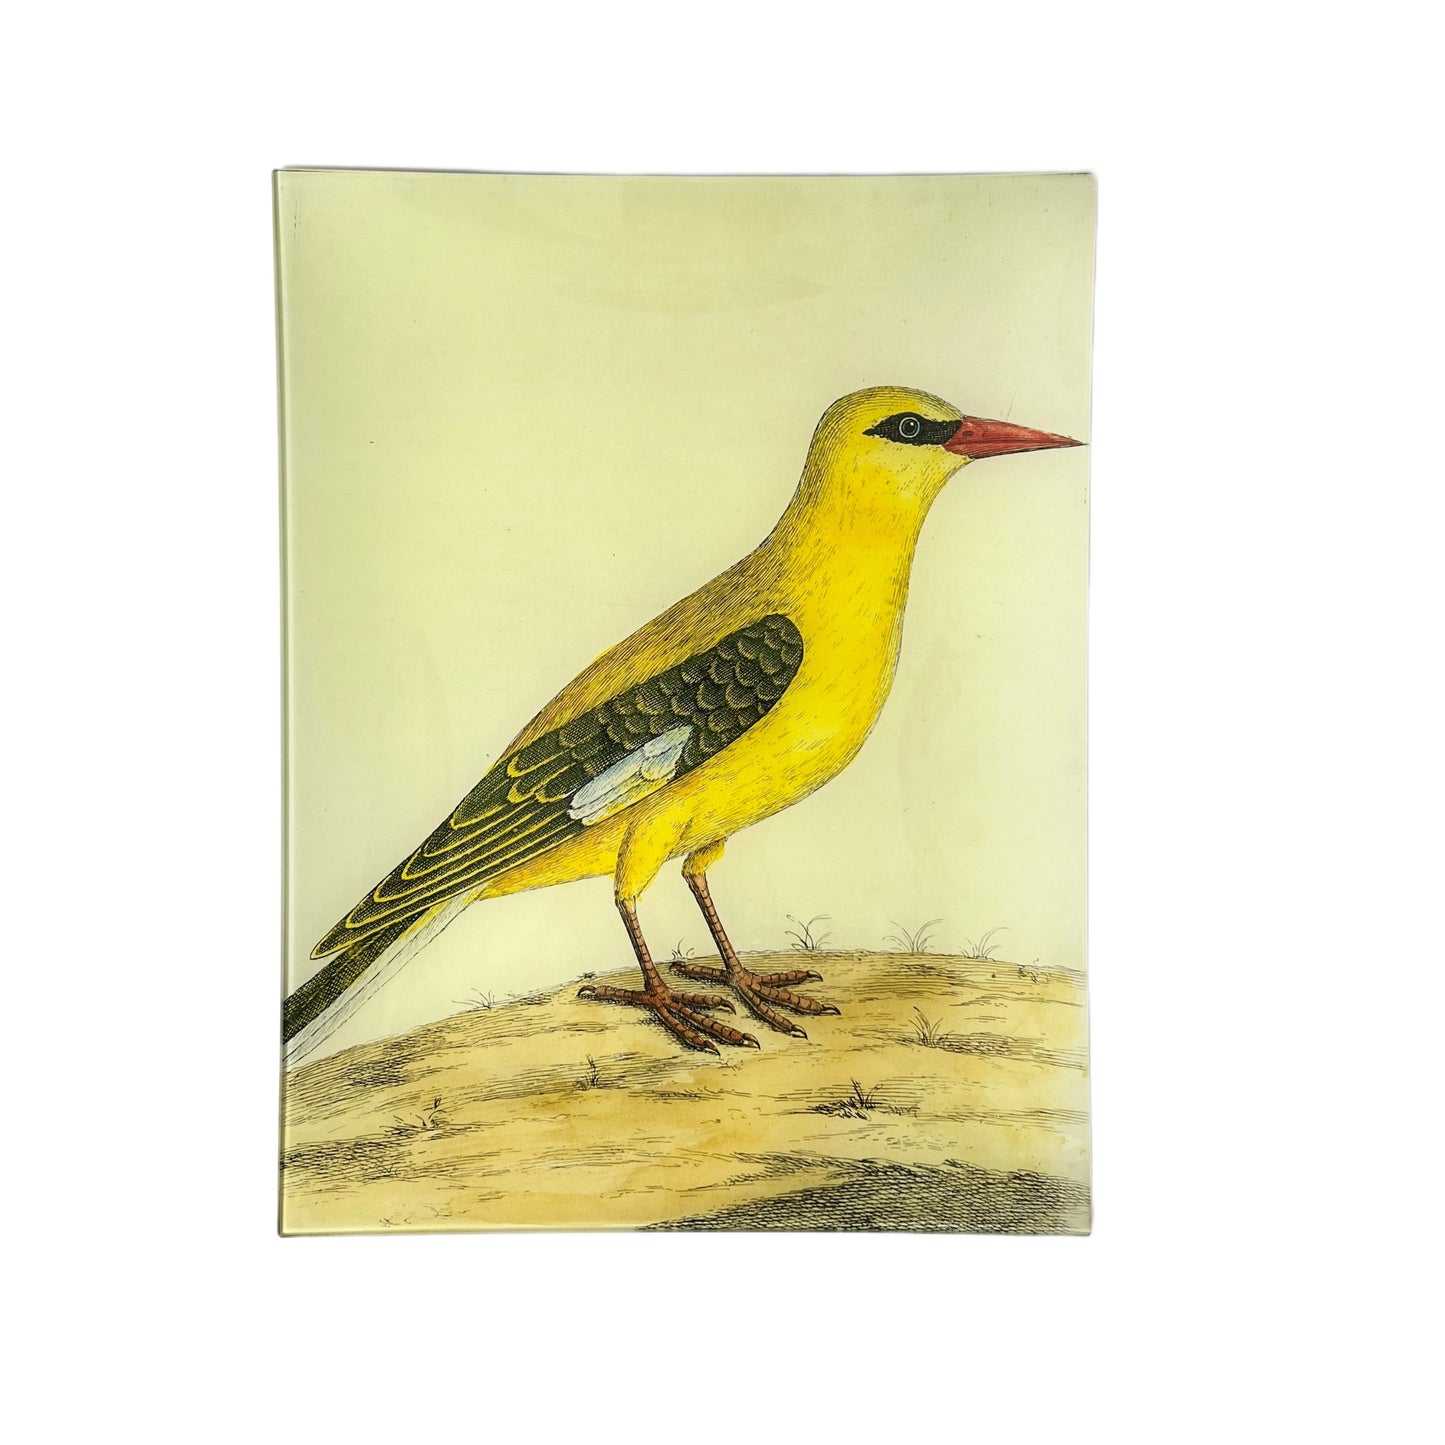 【JOHN DERIAN】デコパージュプレート #20 - Bengali Yellow Bird